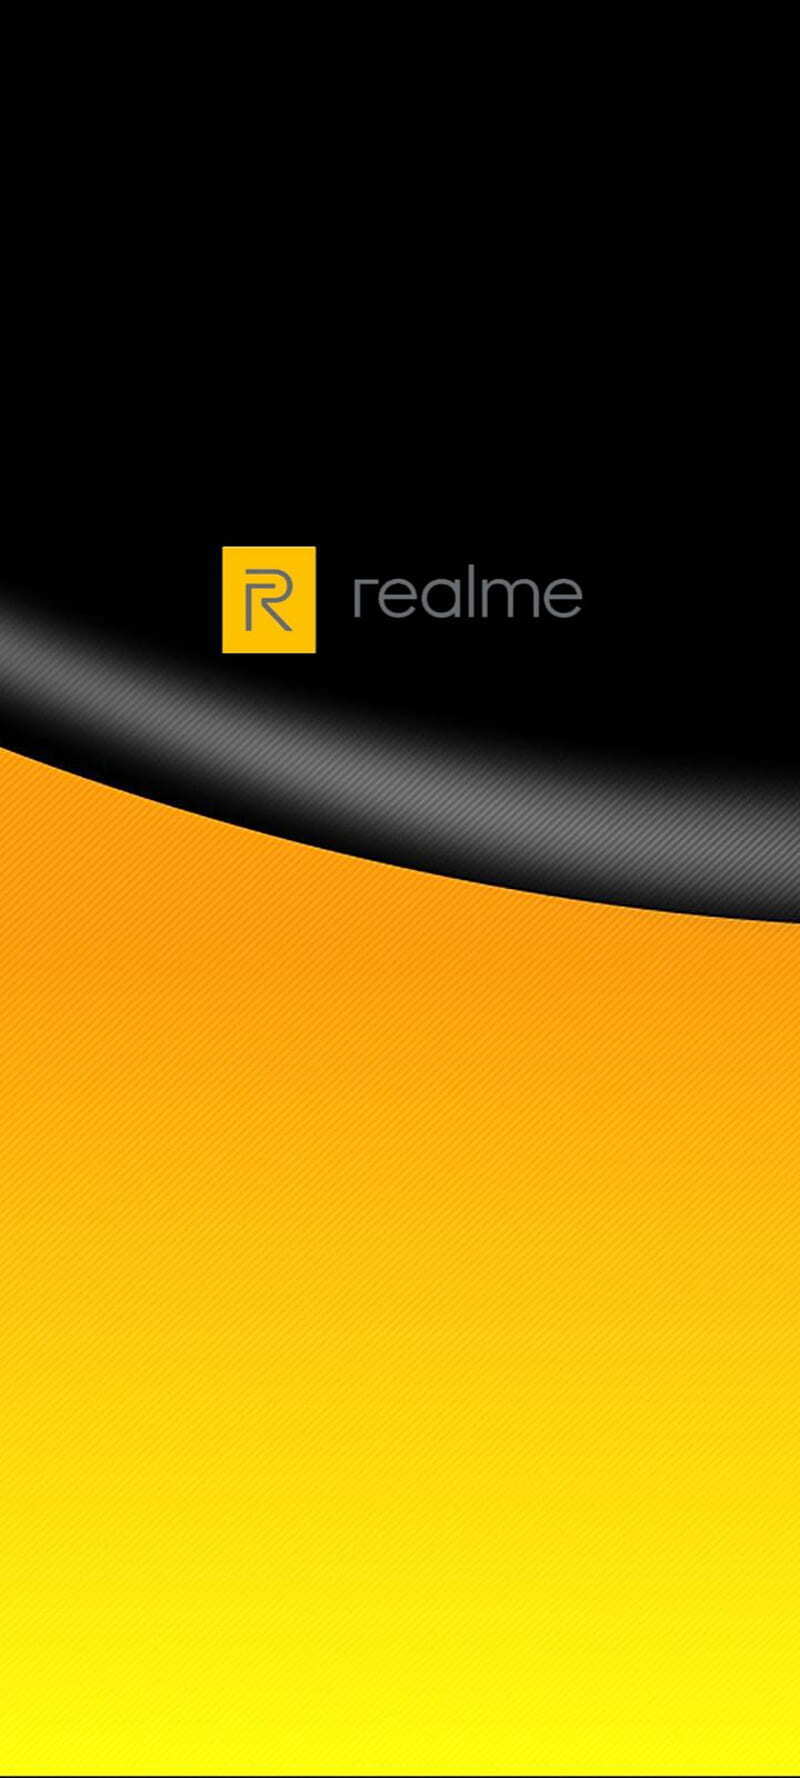 Hình nền Realme sẽ giúp bạn tạo ra một không gian giai điệu mới đầy màu sắc trên màn hình smartphone của mình. Với những thiết kế độc đáo và tinh tế, Realme sẽ chắc chắn thu hút mọi ánh nhìn.